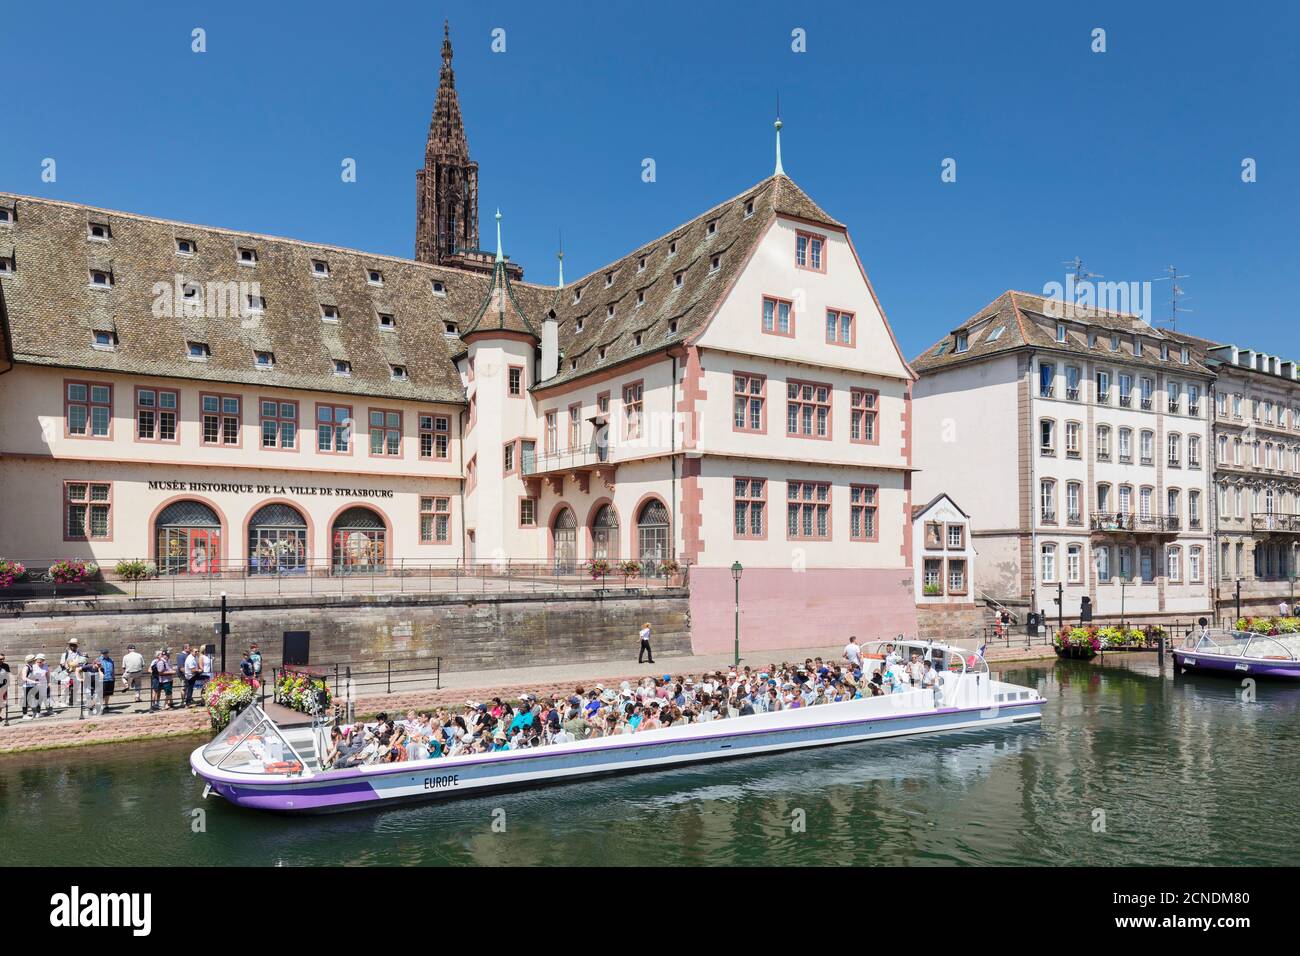 Ausflugsboot auf der Ill, Historisches Museum und Kathedrale, Straßburg, Elsass, Frankreich, Europa Stockfoto